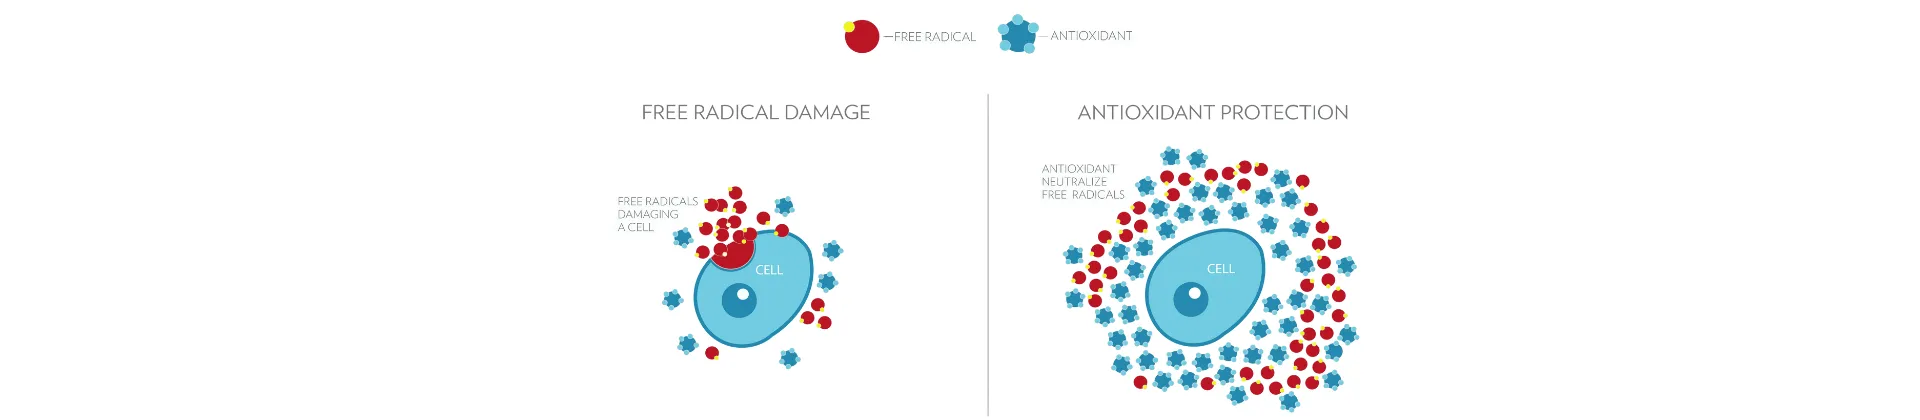 free radical damage antioxidant protection